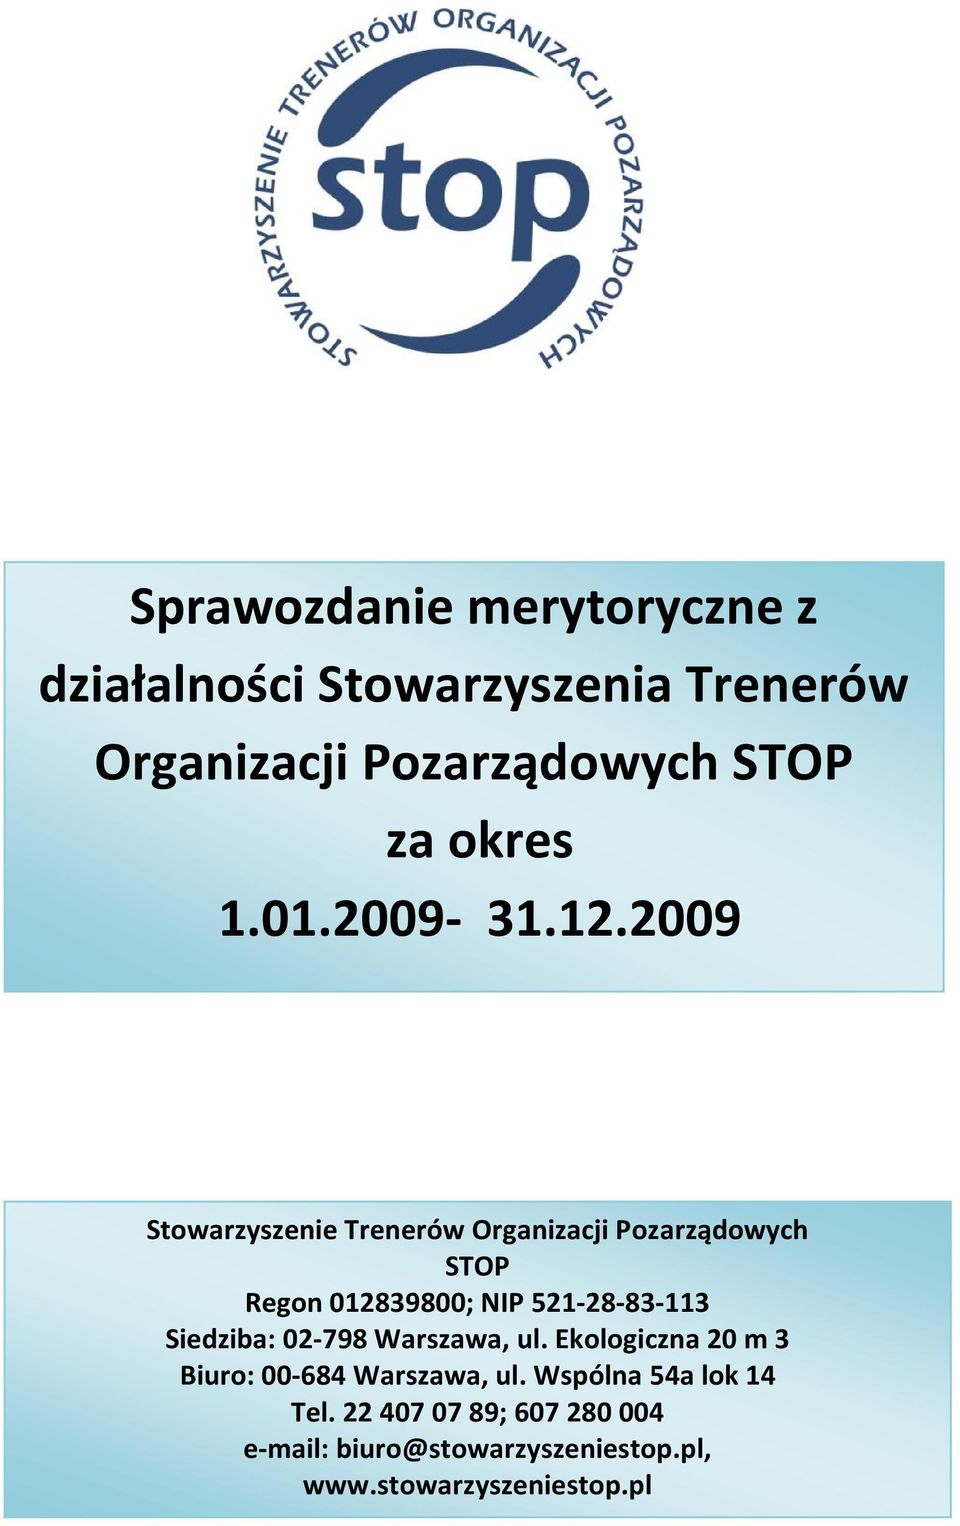 2009 Stowarzyszenie Trenerów Organizacji Pozarządowych STOP Regon 012839800; NIP 521-28-83-113